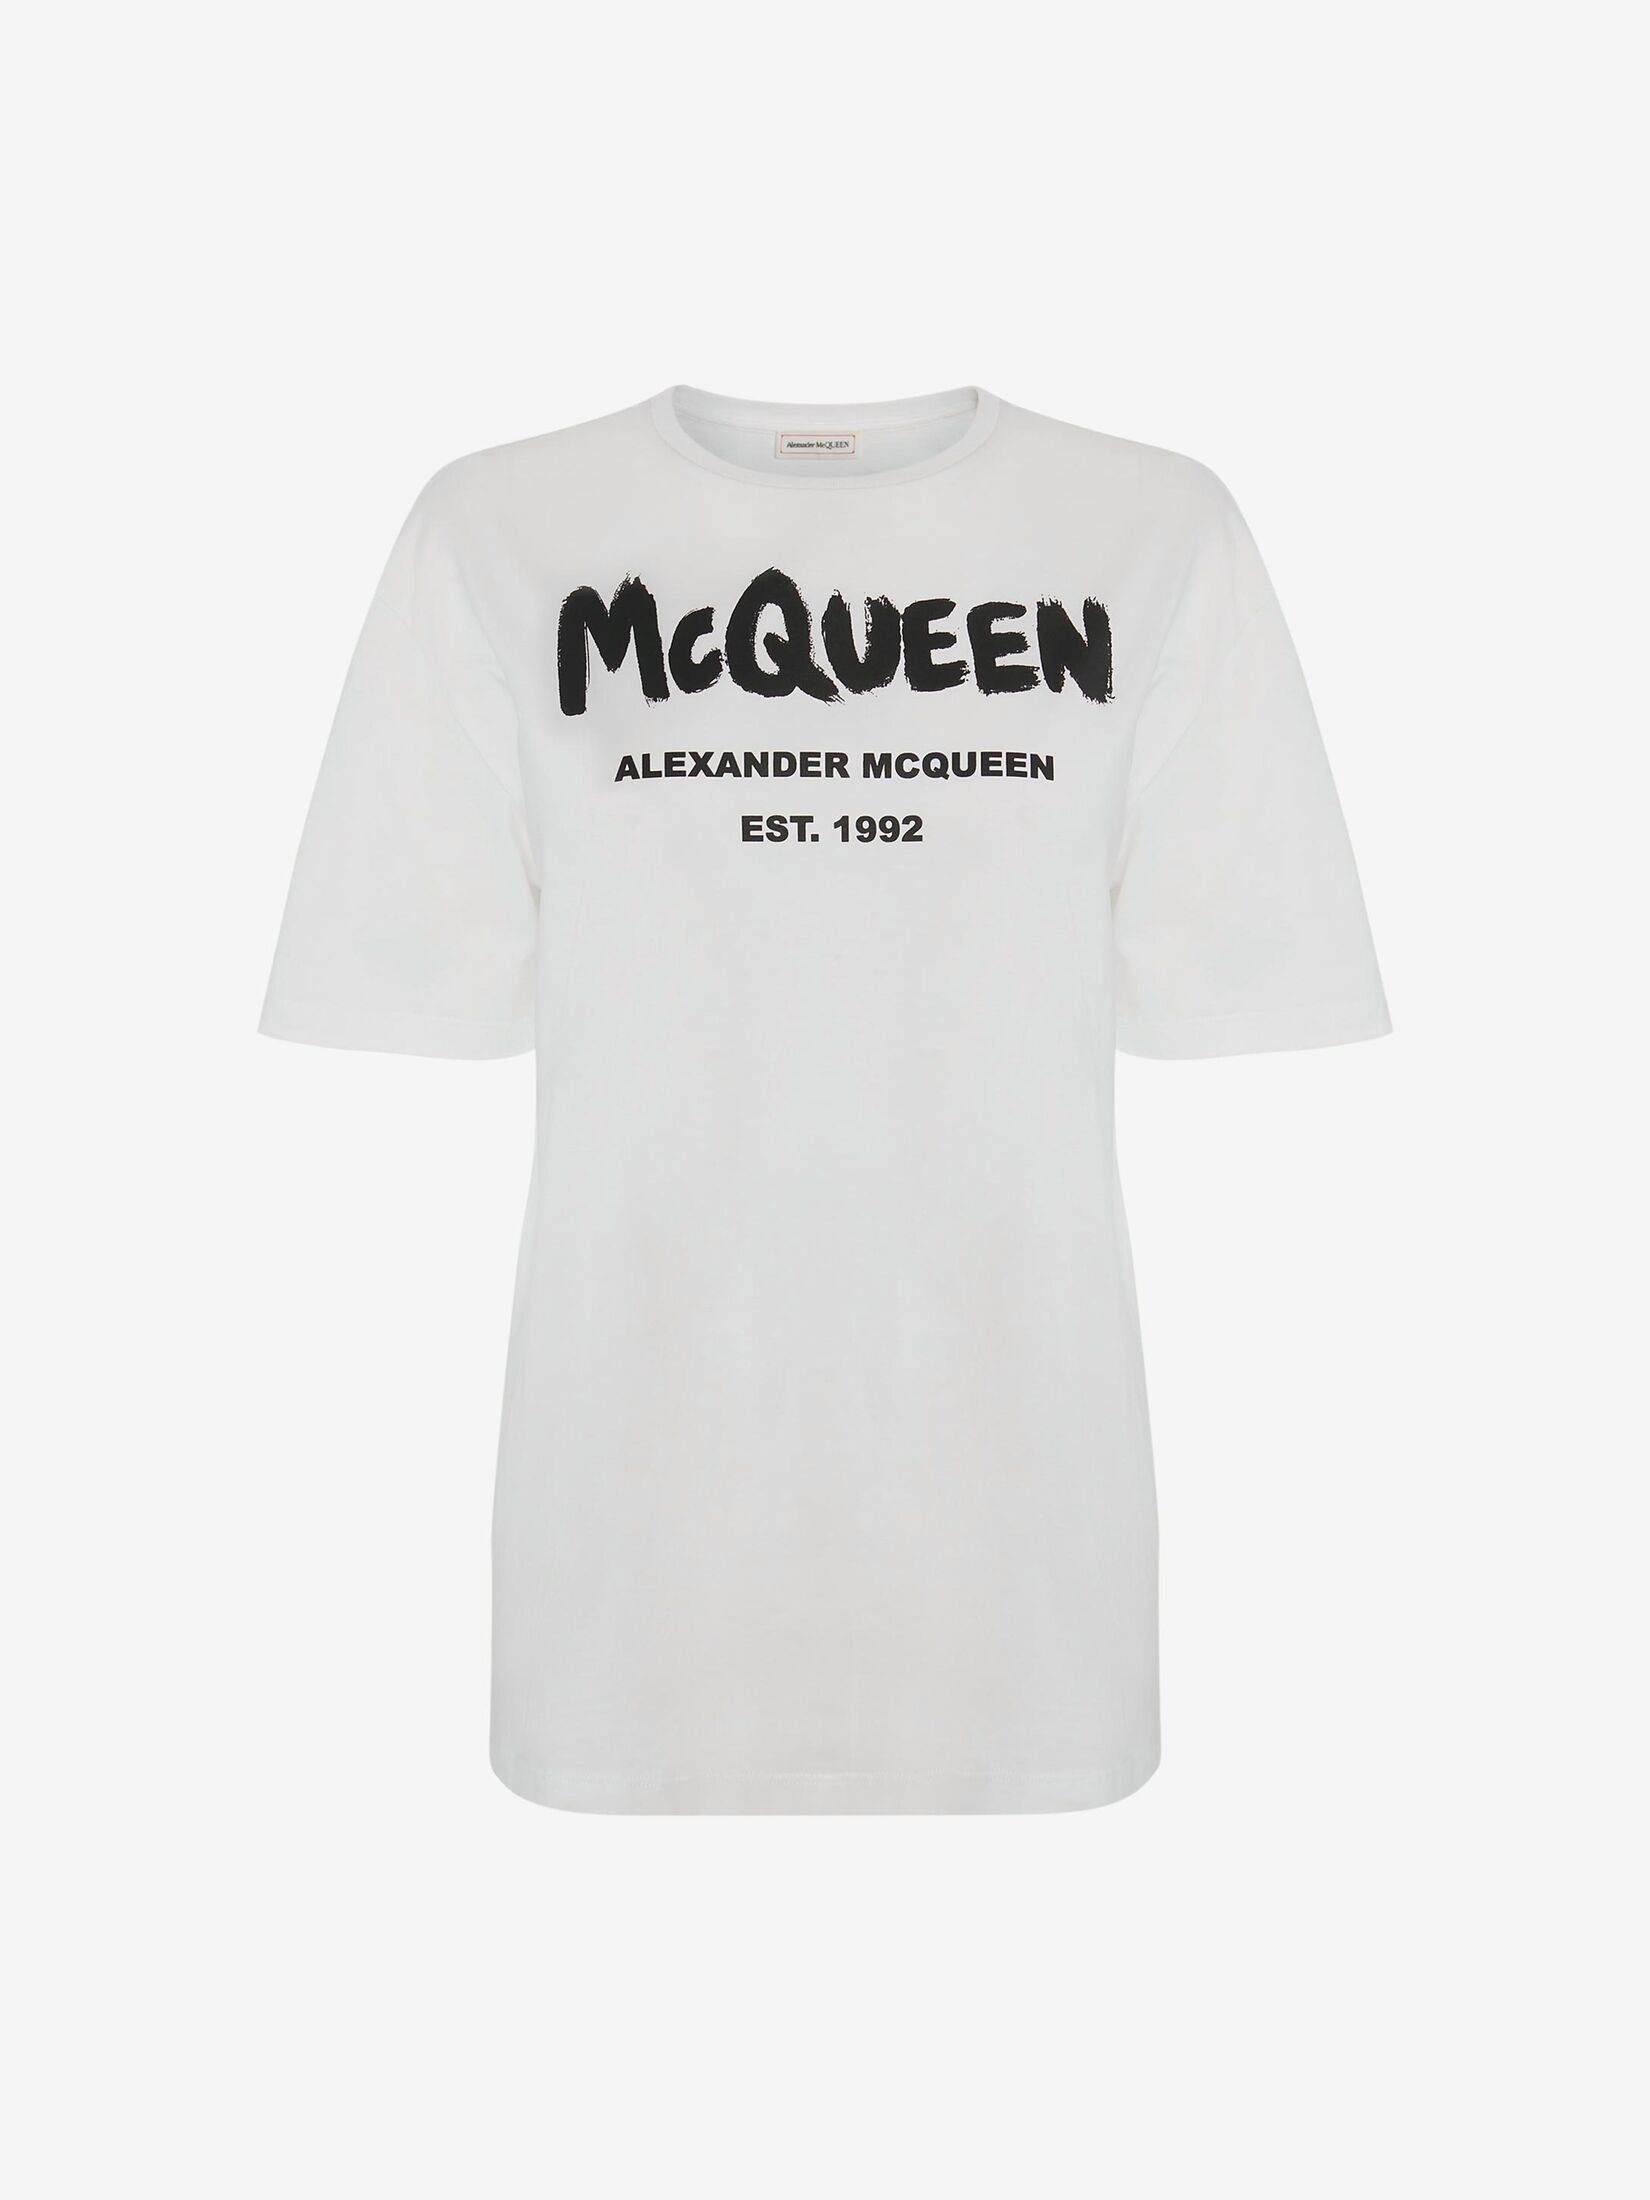 Alexander McQueen graffiti print short-sleeve shirt - Black